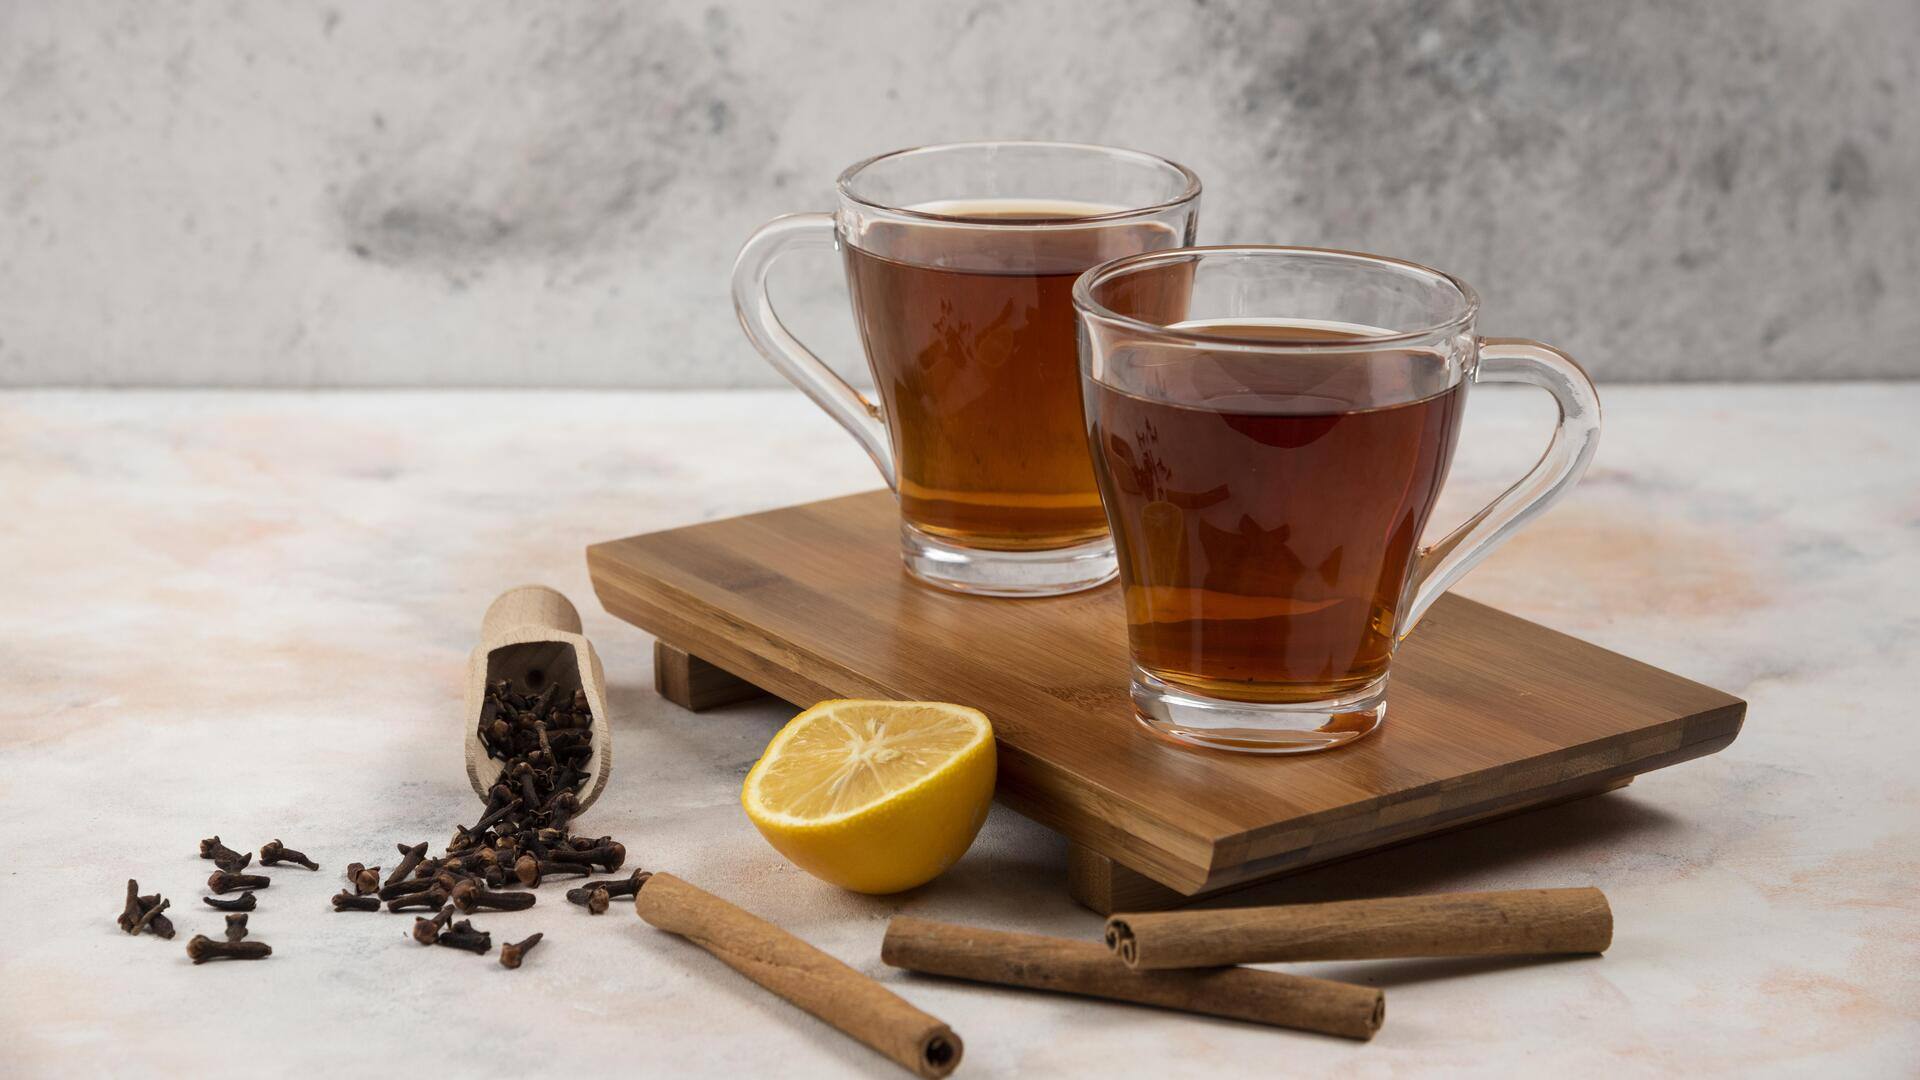 लौंग की चाय से करें दिन की शुरुआत, स्वास्थ्य को मिलेंगे ये 5 प्रमुख लाभ